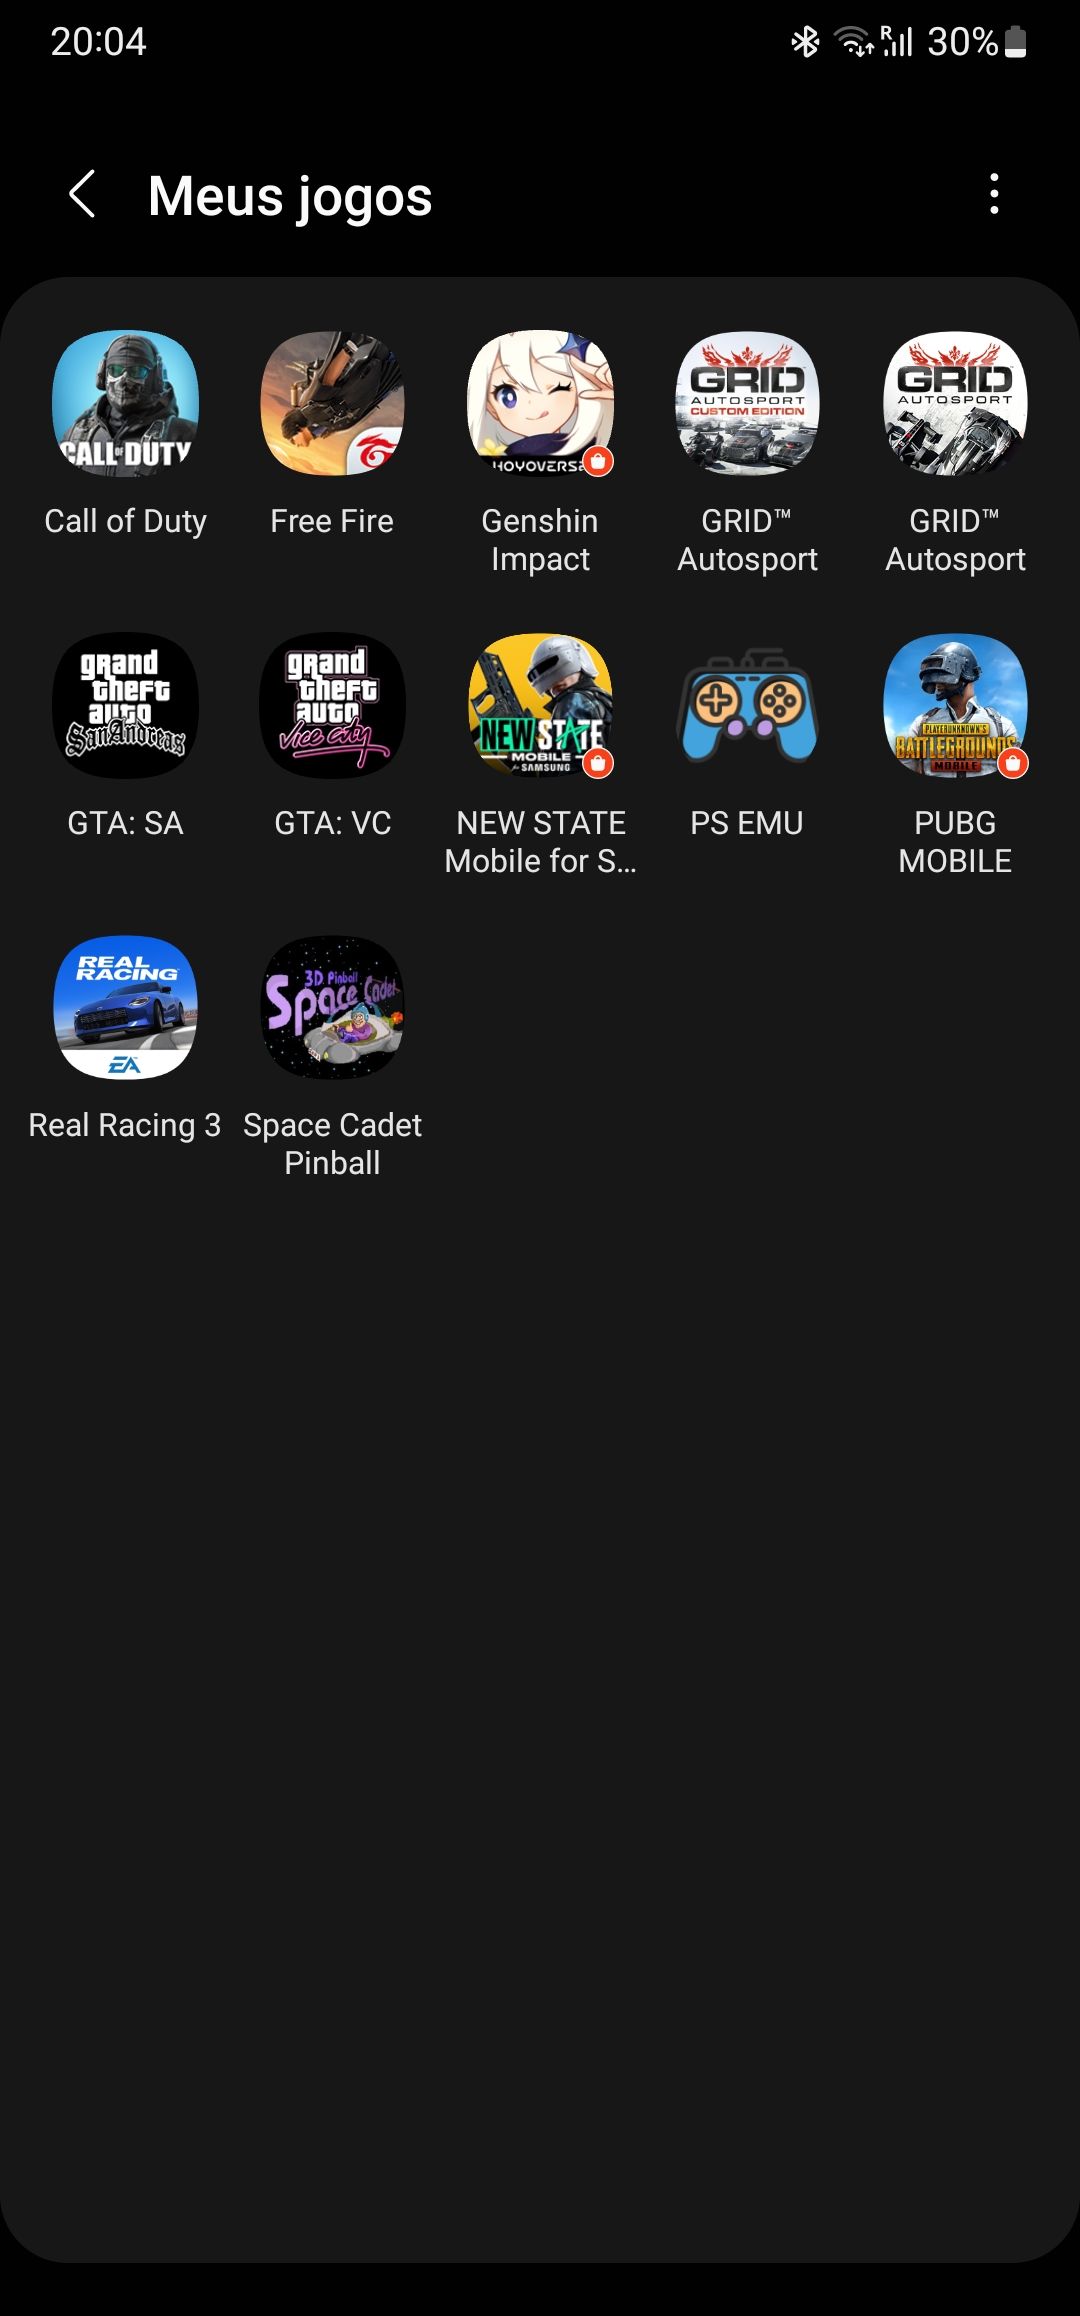 Quais jogos você tem no seu celular? - Página 2 - Samsung Members